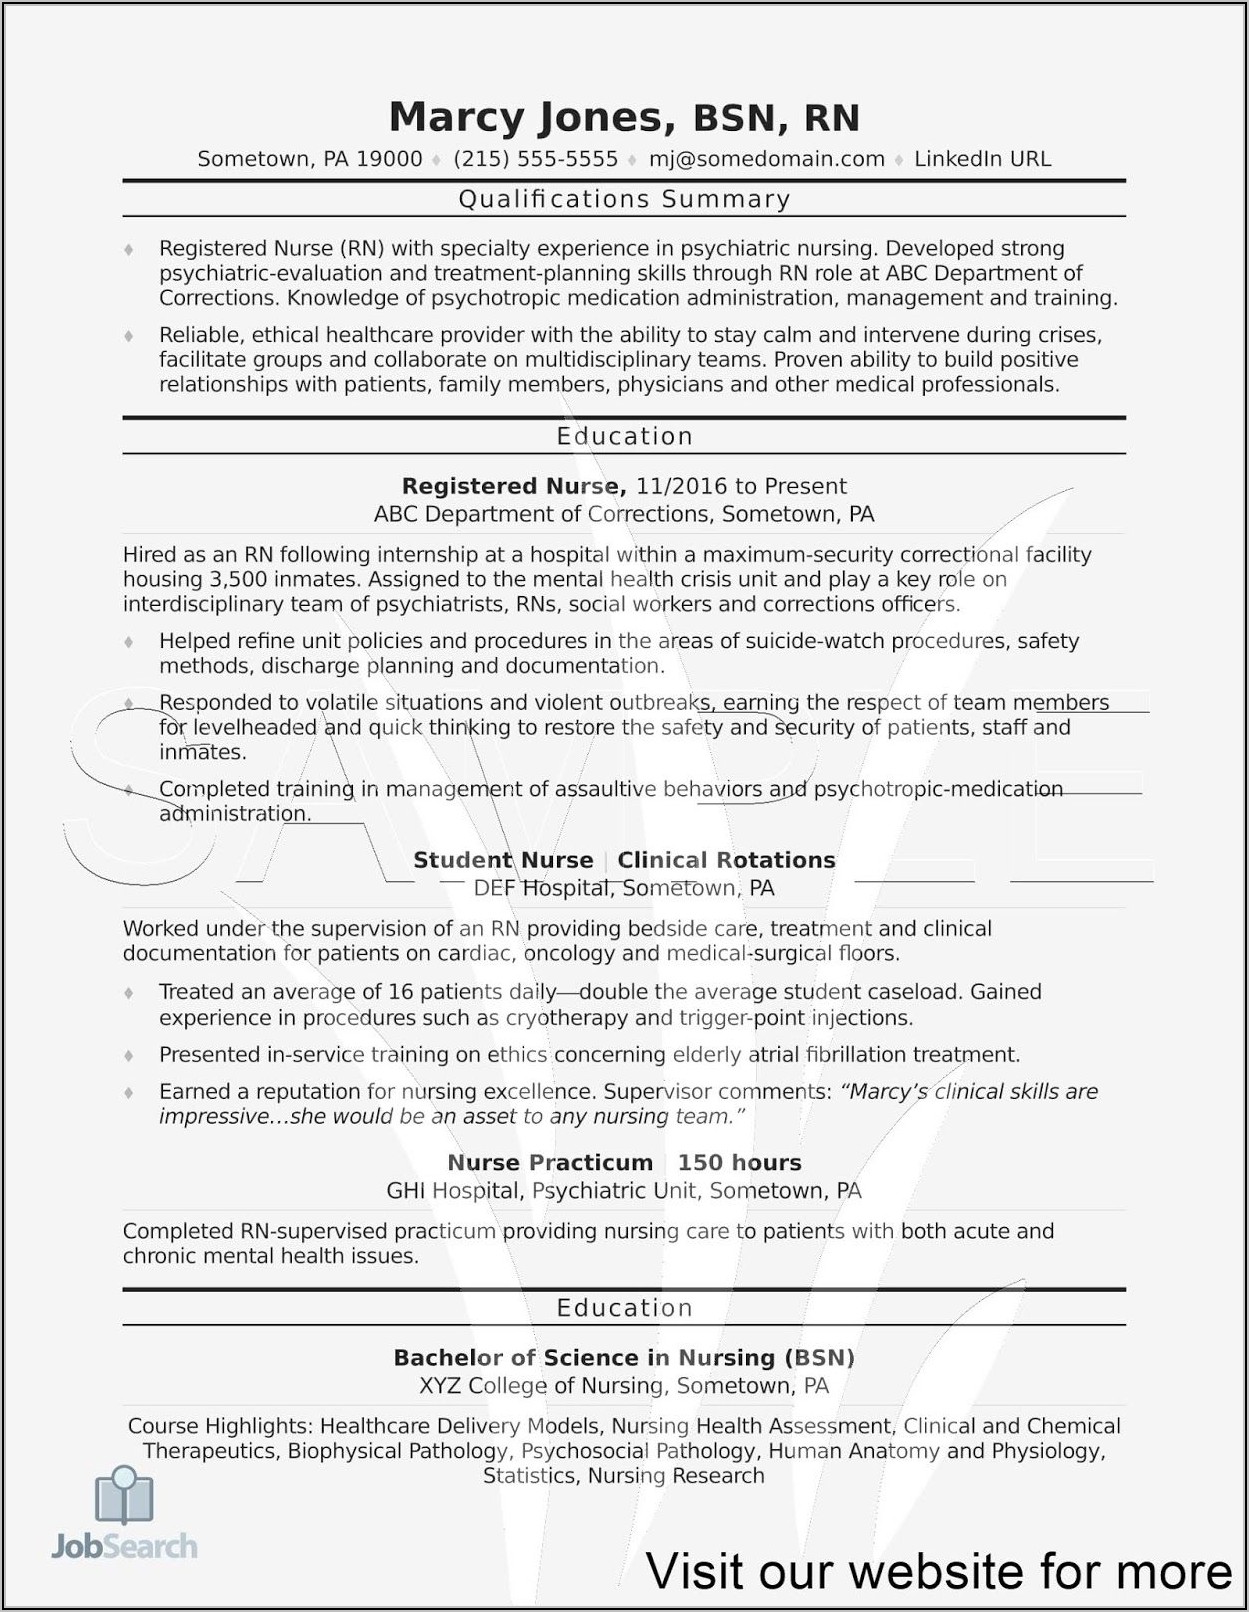 Resume For Registered Nurse In Australia